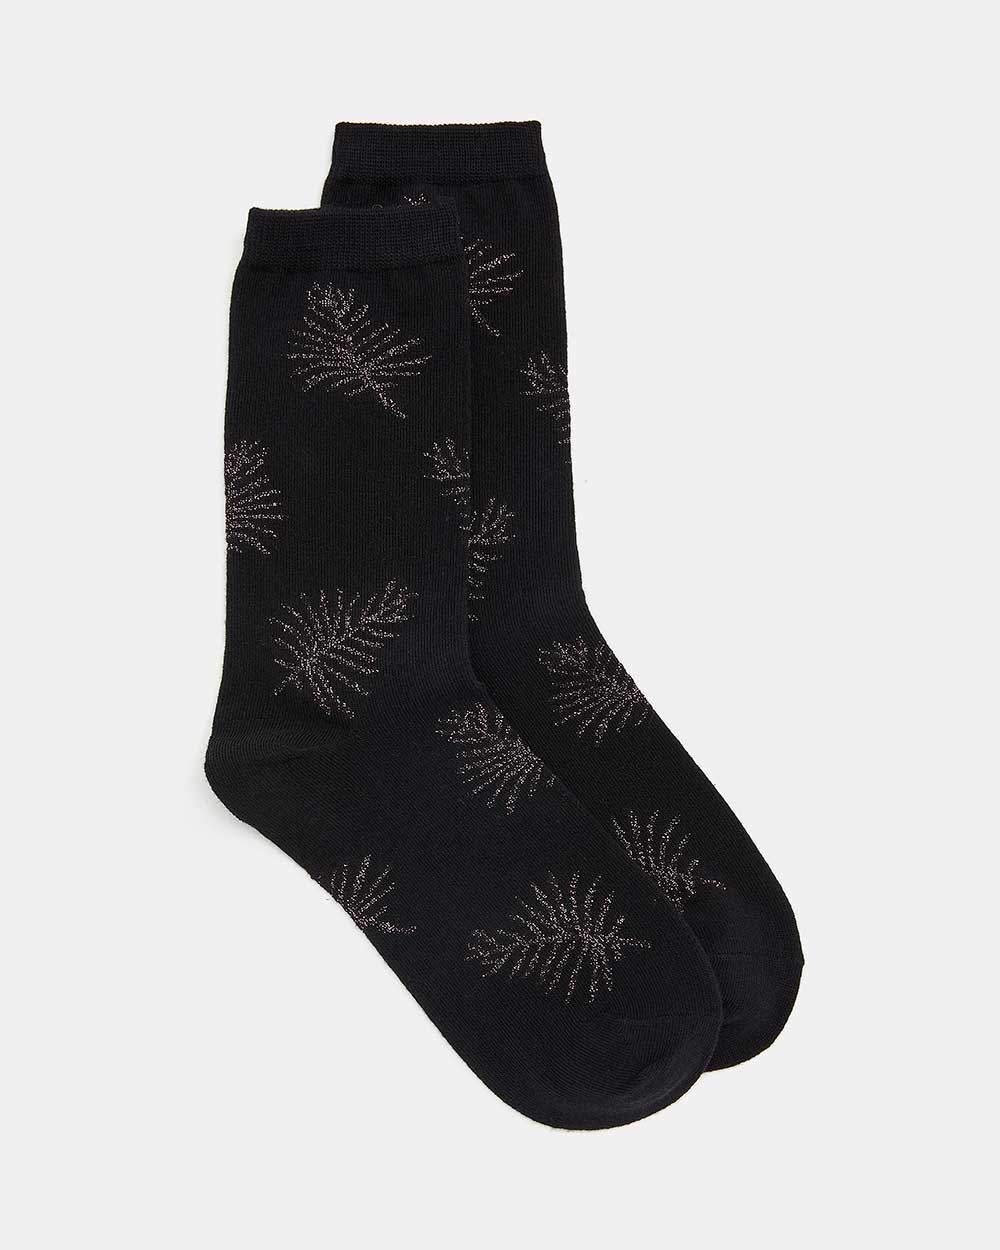 Black Leafy Socks